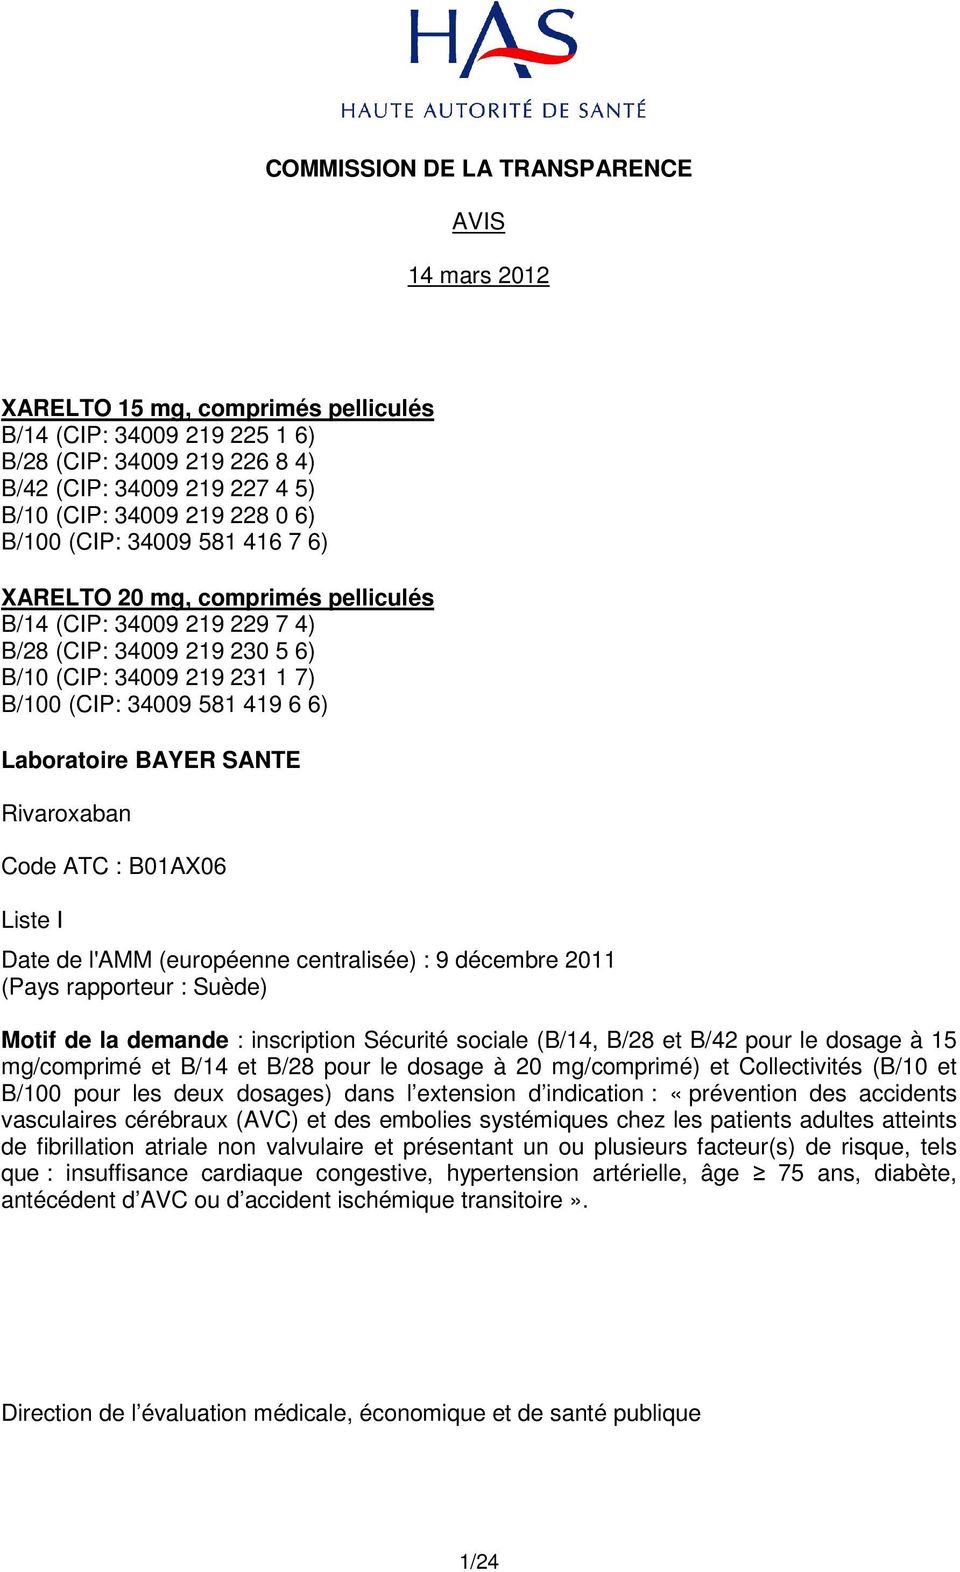 Laboratoire BAYER SANTE Rivaroxaban Code ATC : B01AX06 Liste I Date de l'amm (européenne centralisée) : 9 décembre 2011 (Pays rapporteur : Suède) Motif de la demande : inscription Sécurité sociale